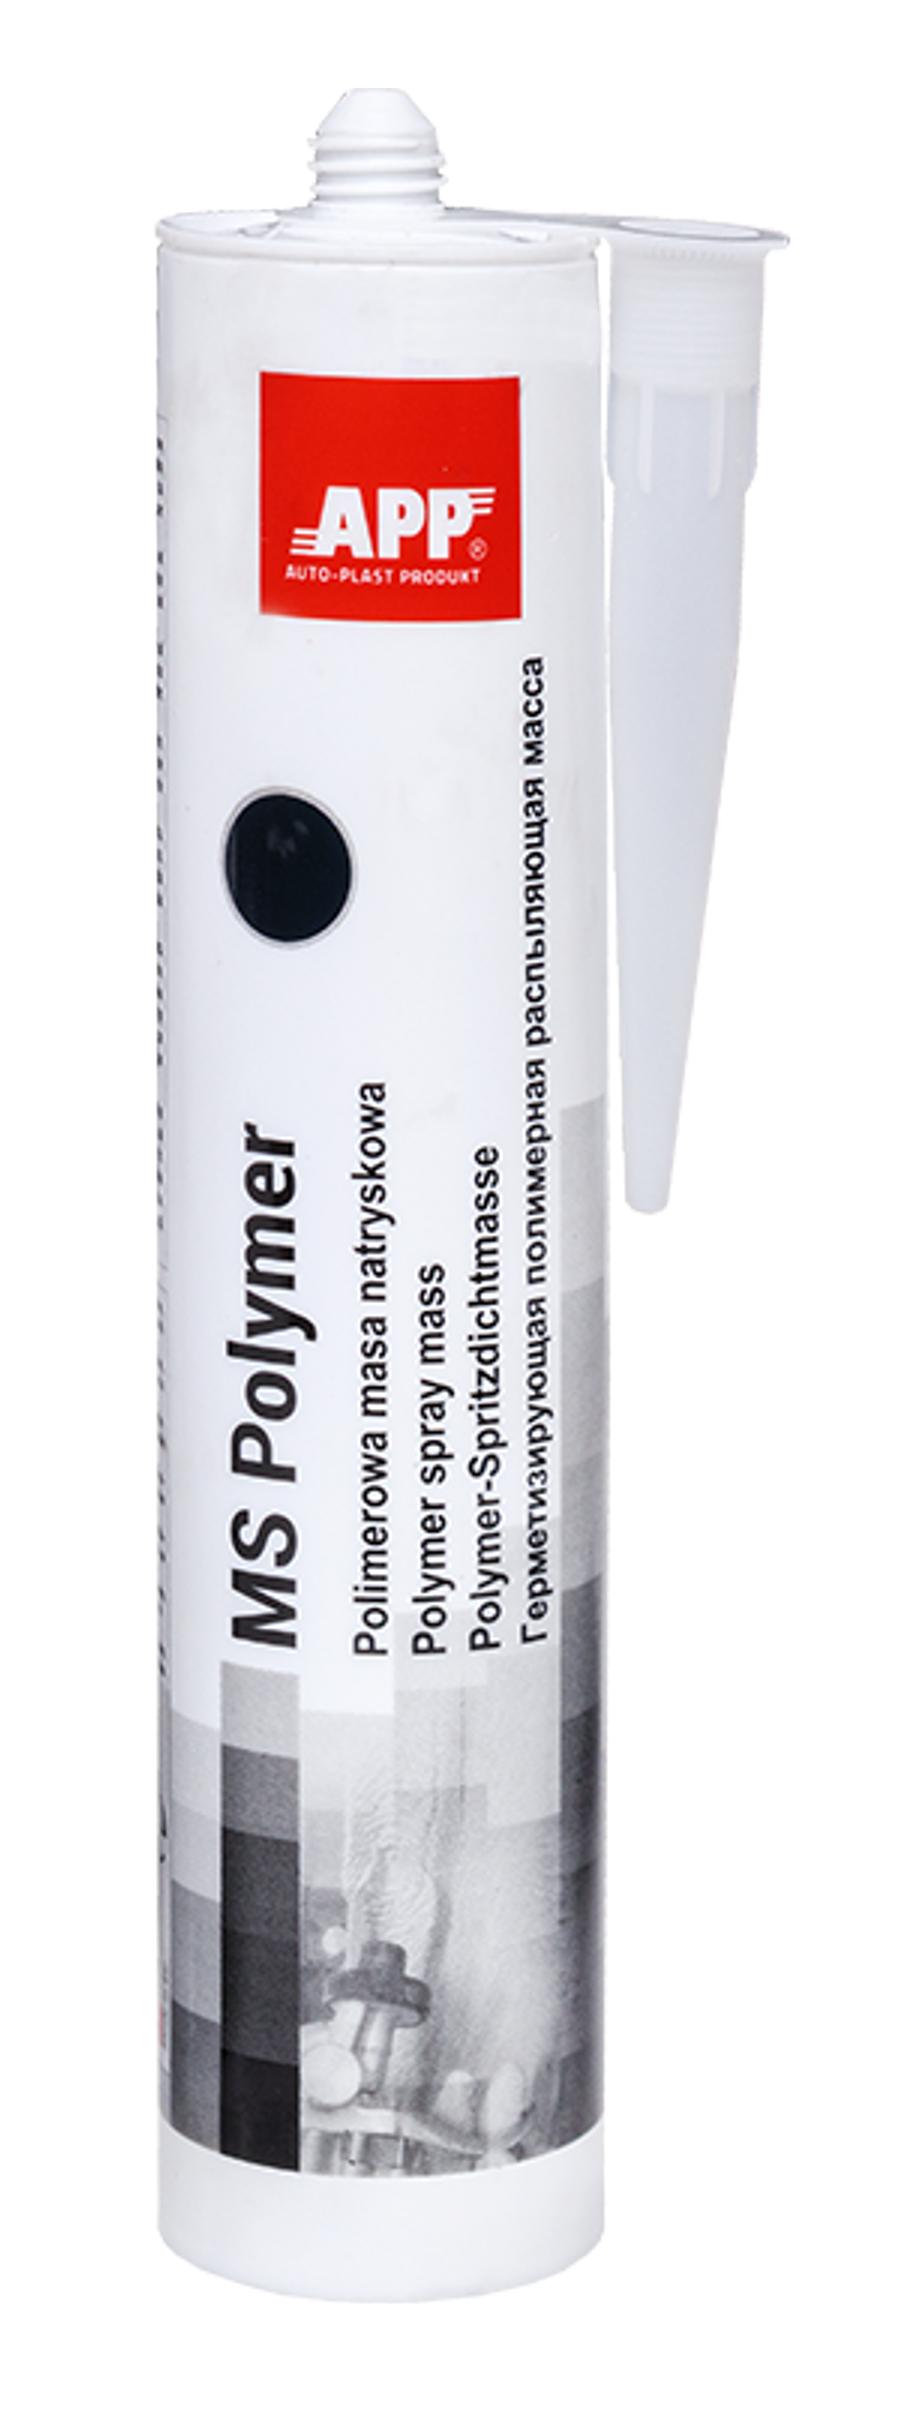 APP 040405 MS Polymer - Spritzmasse spritzbare Nahtabdichtung schwarz 310 ml | Spritzdichtungsmasse Karosseriedichtmasse Kartusche